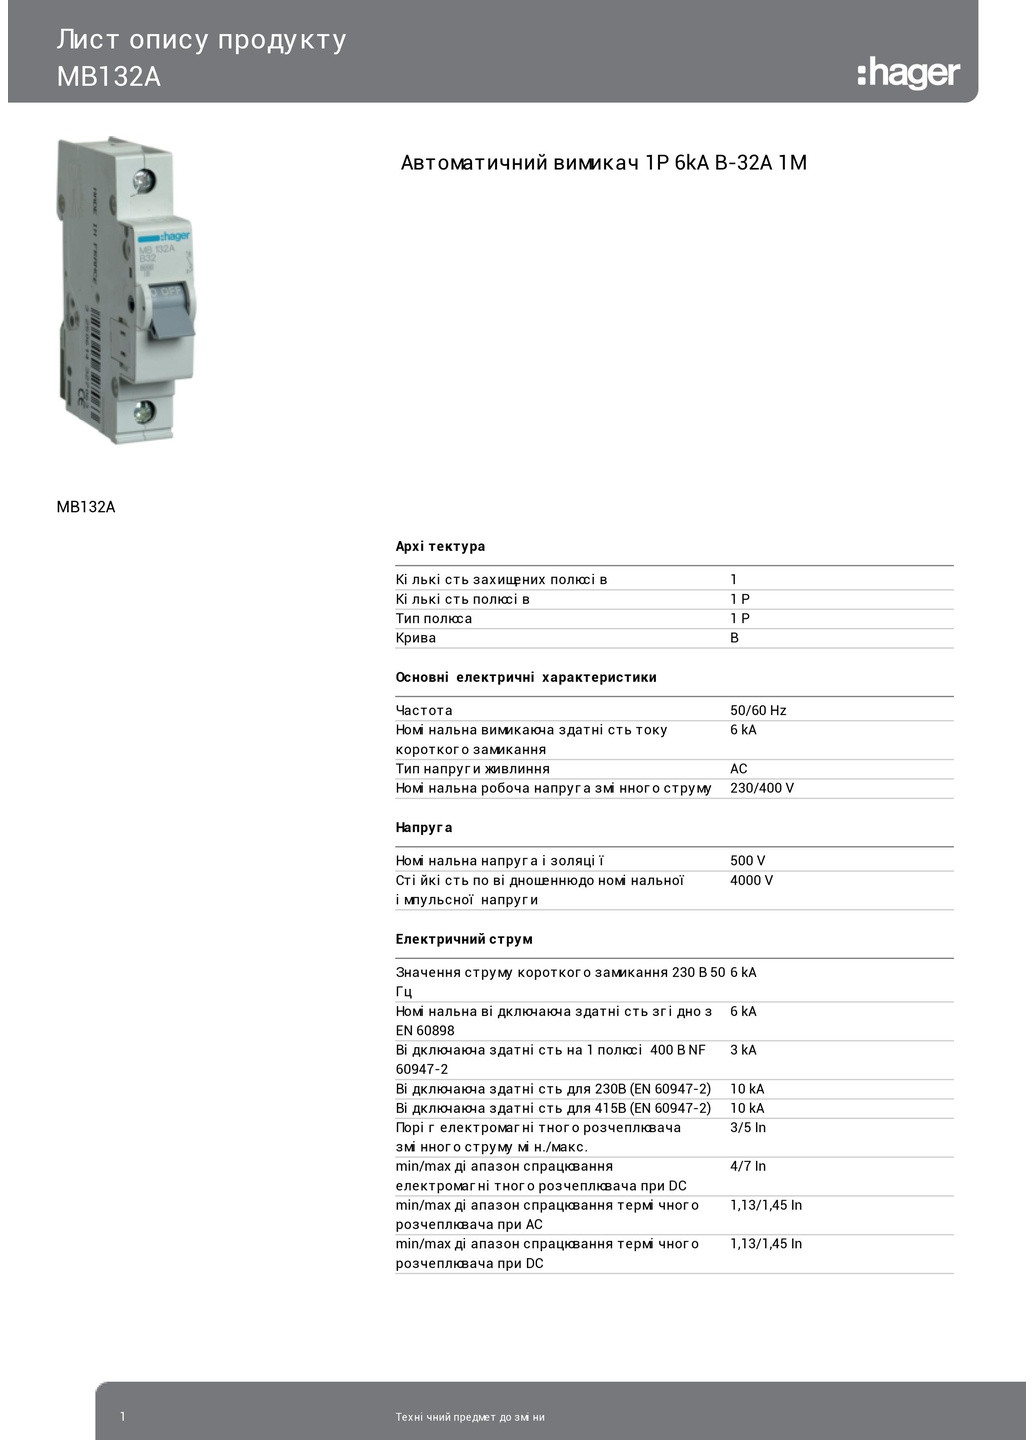 Вводный автомат 32A автоматический выключатель однополюсный MB132A 1р B 32А (3107) Hager (265535322)